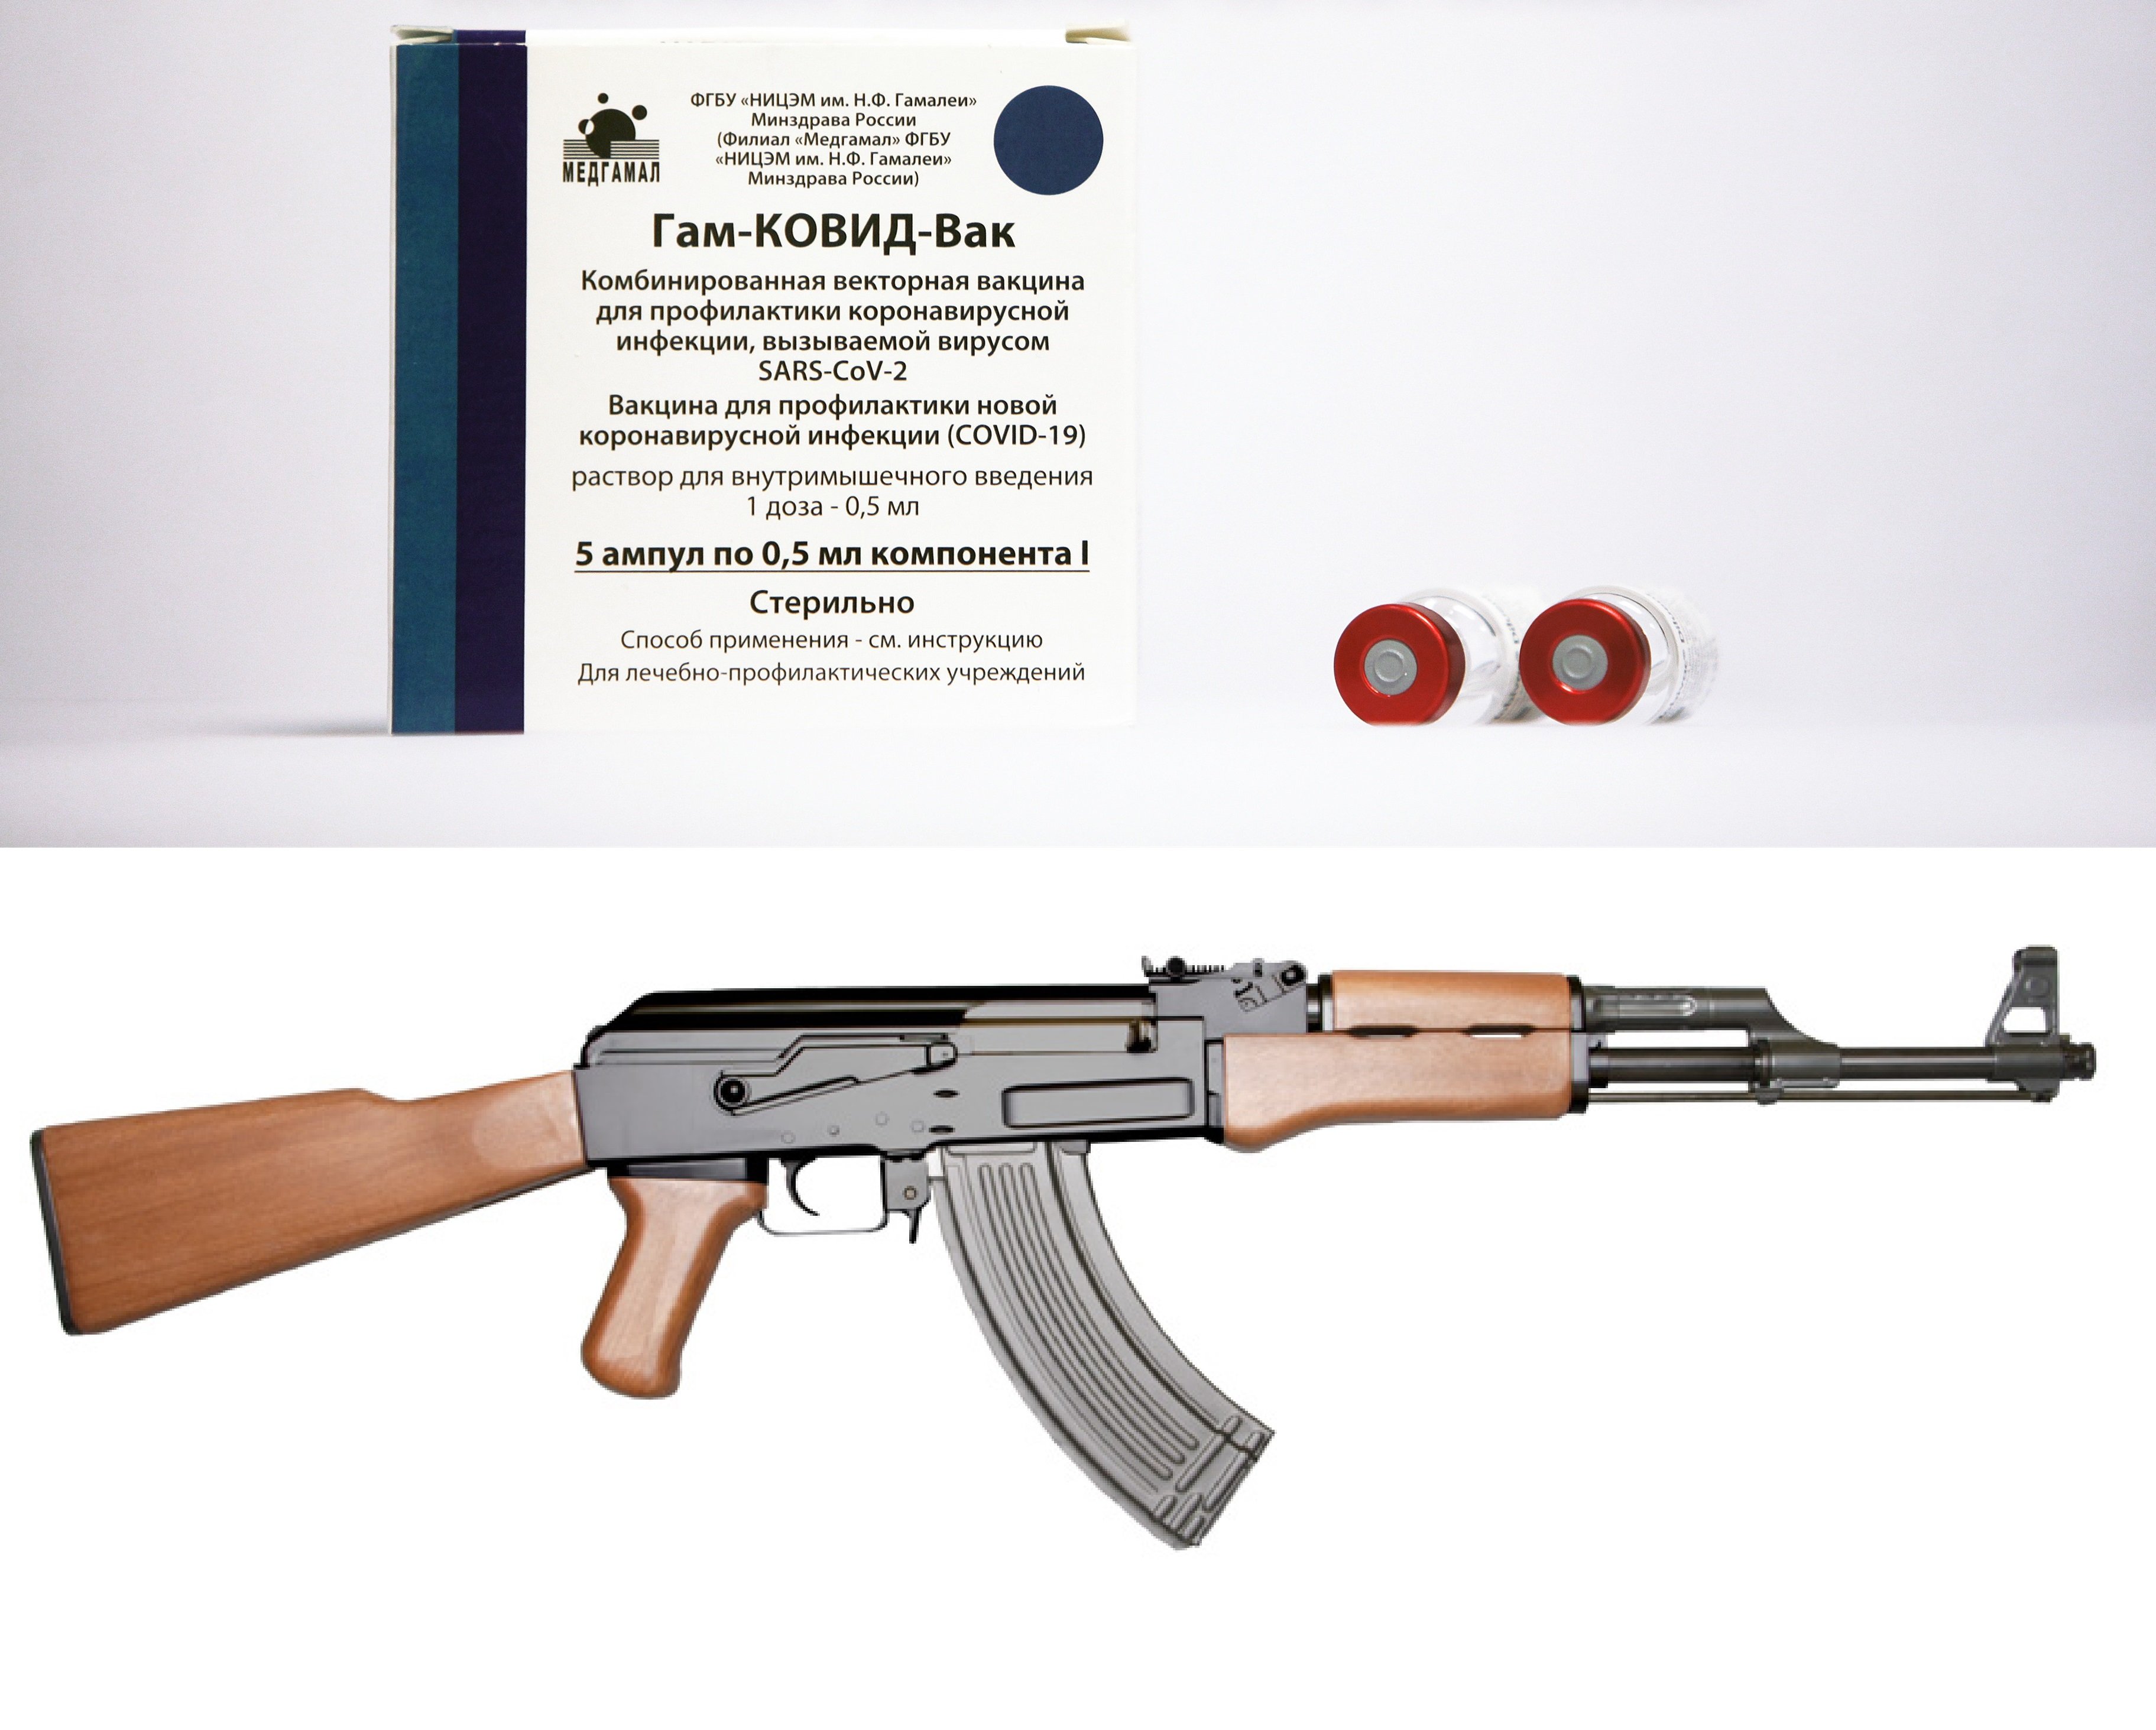 (EuropaPress) caja dosis vacuna sputnik / (Ickybicky/Wikimedia) AK-47